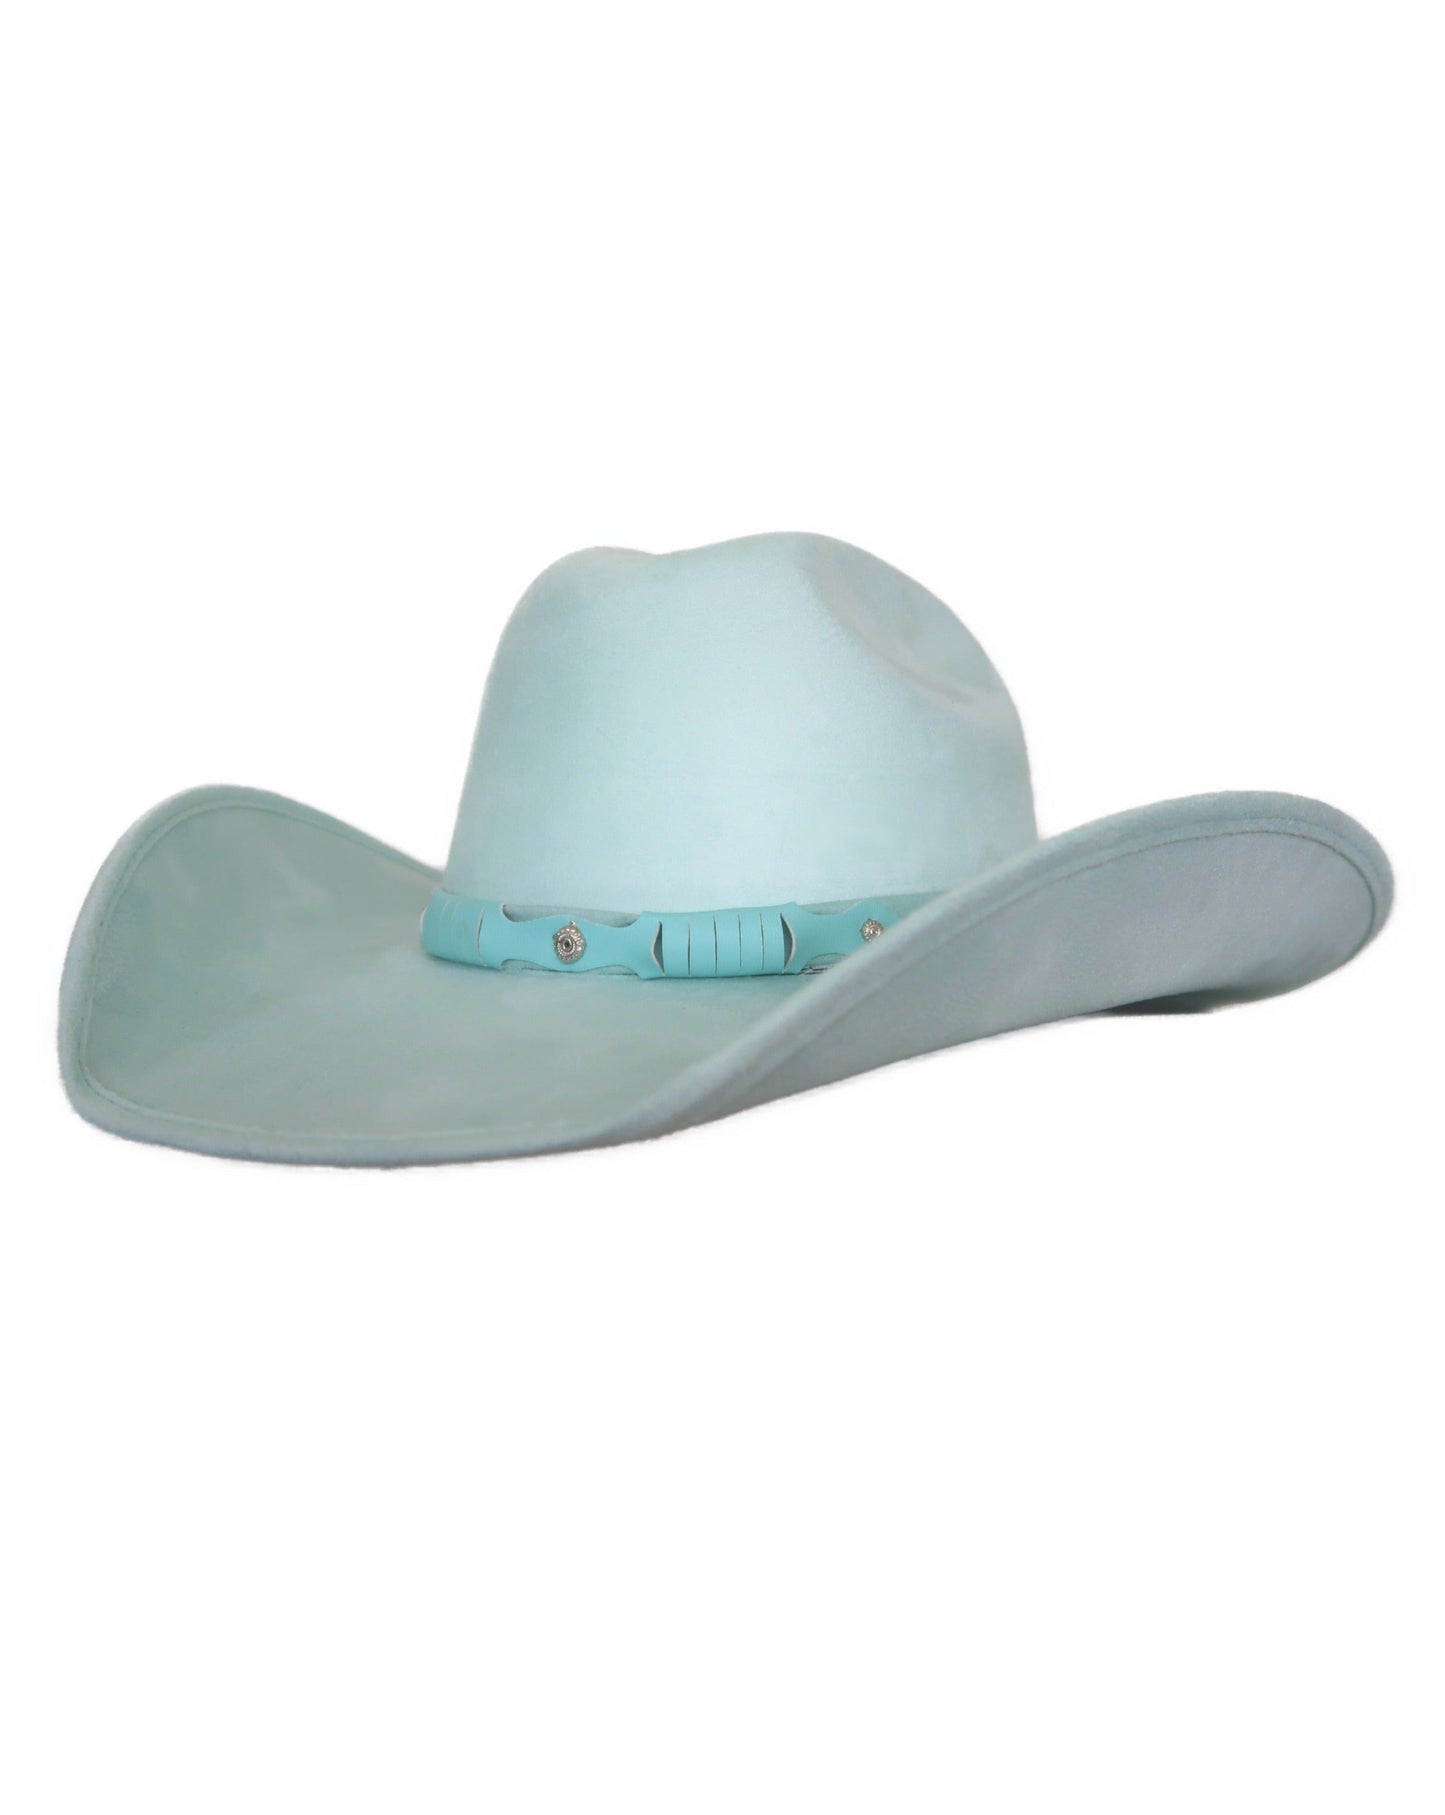 Suede Western Hat